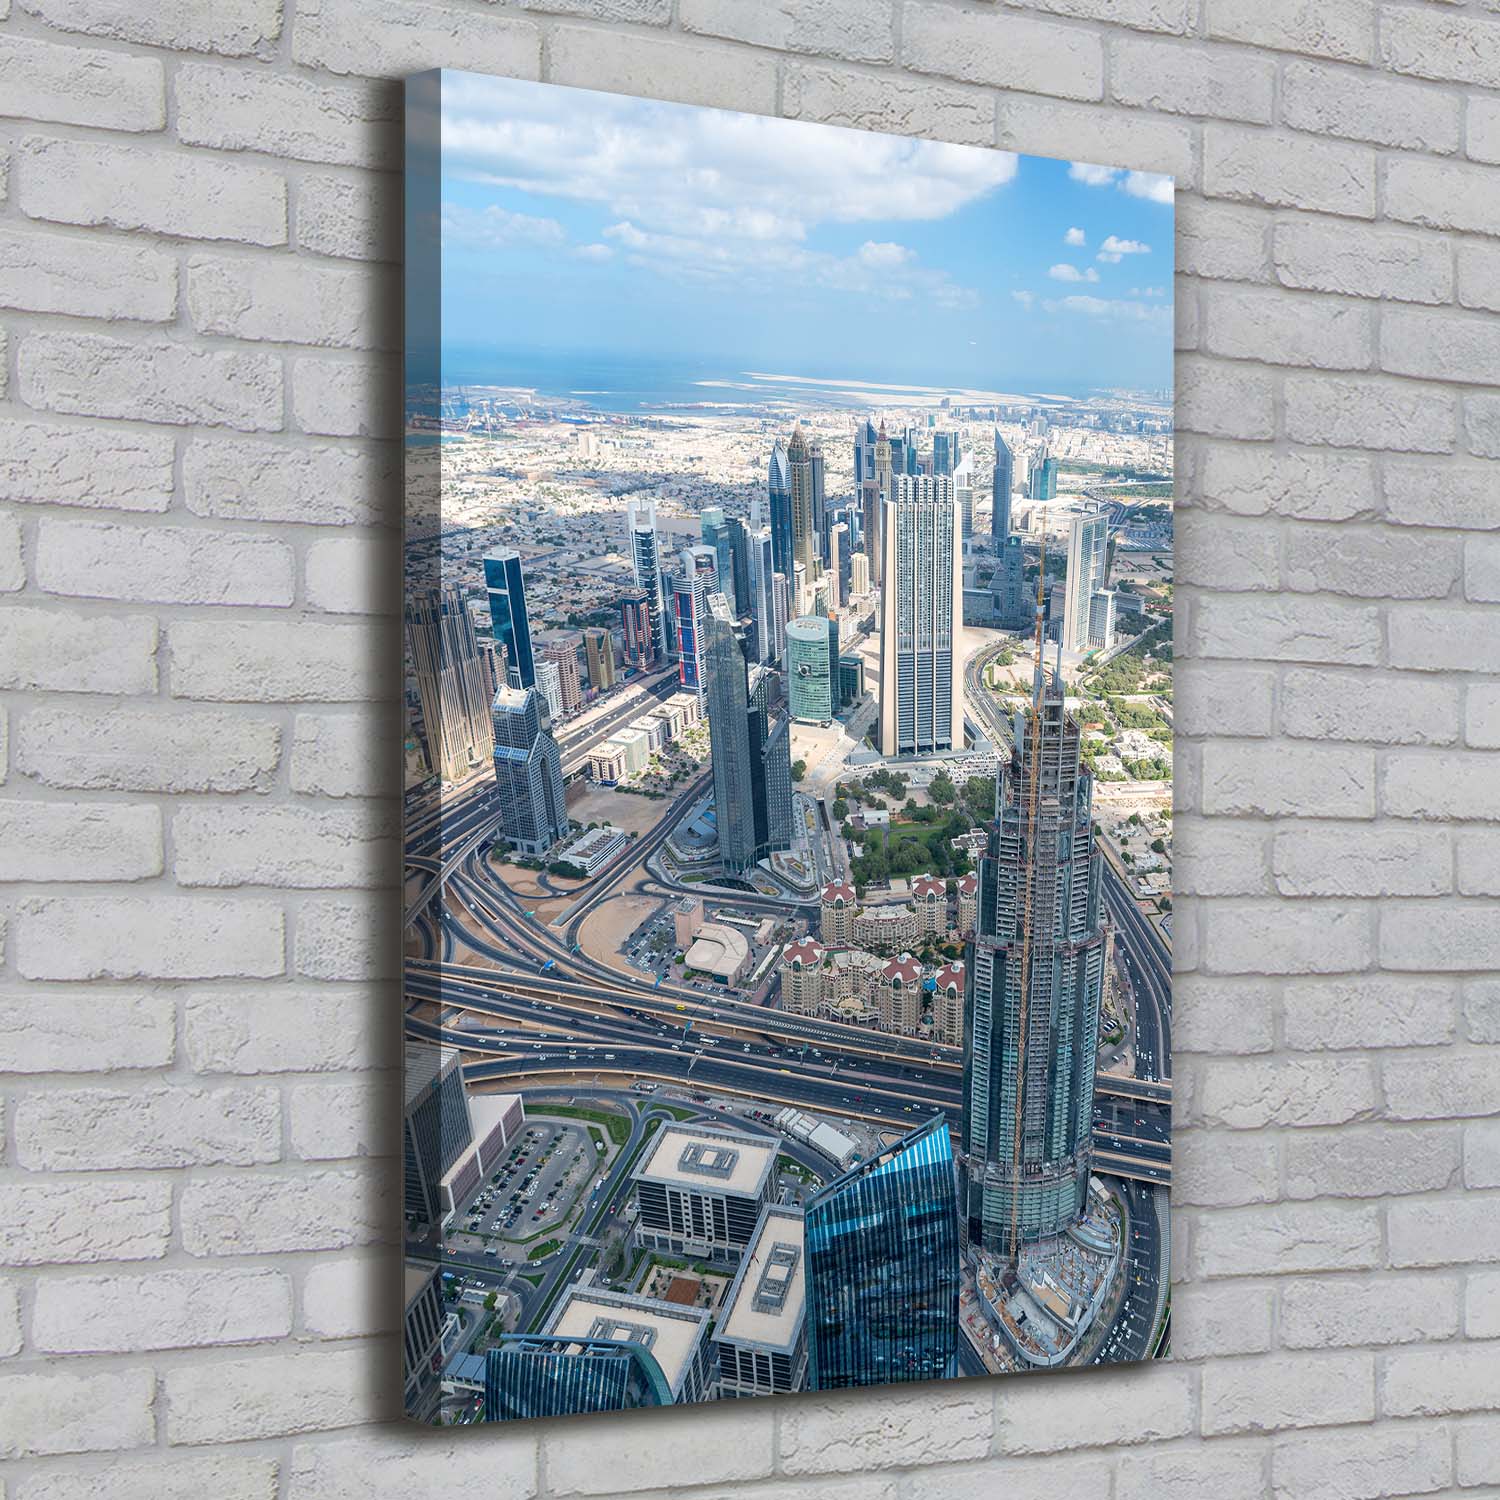 Leinwand-Bild Kunstdruck Hochformat 70x100 Bilder Wolkenkratzer